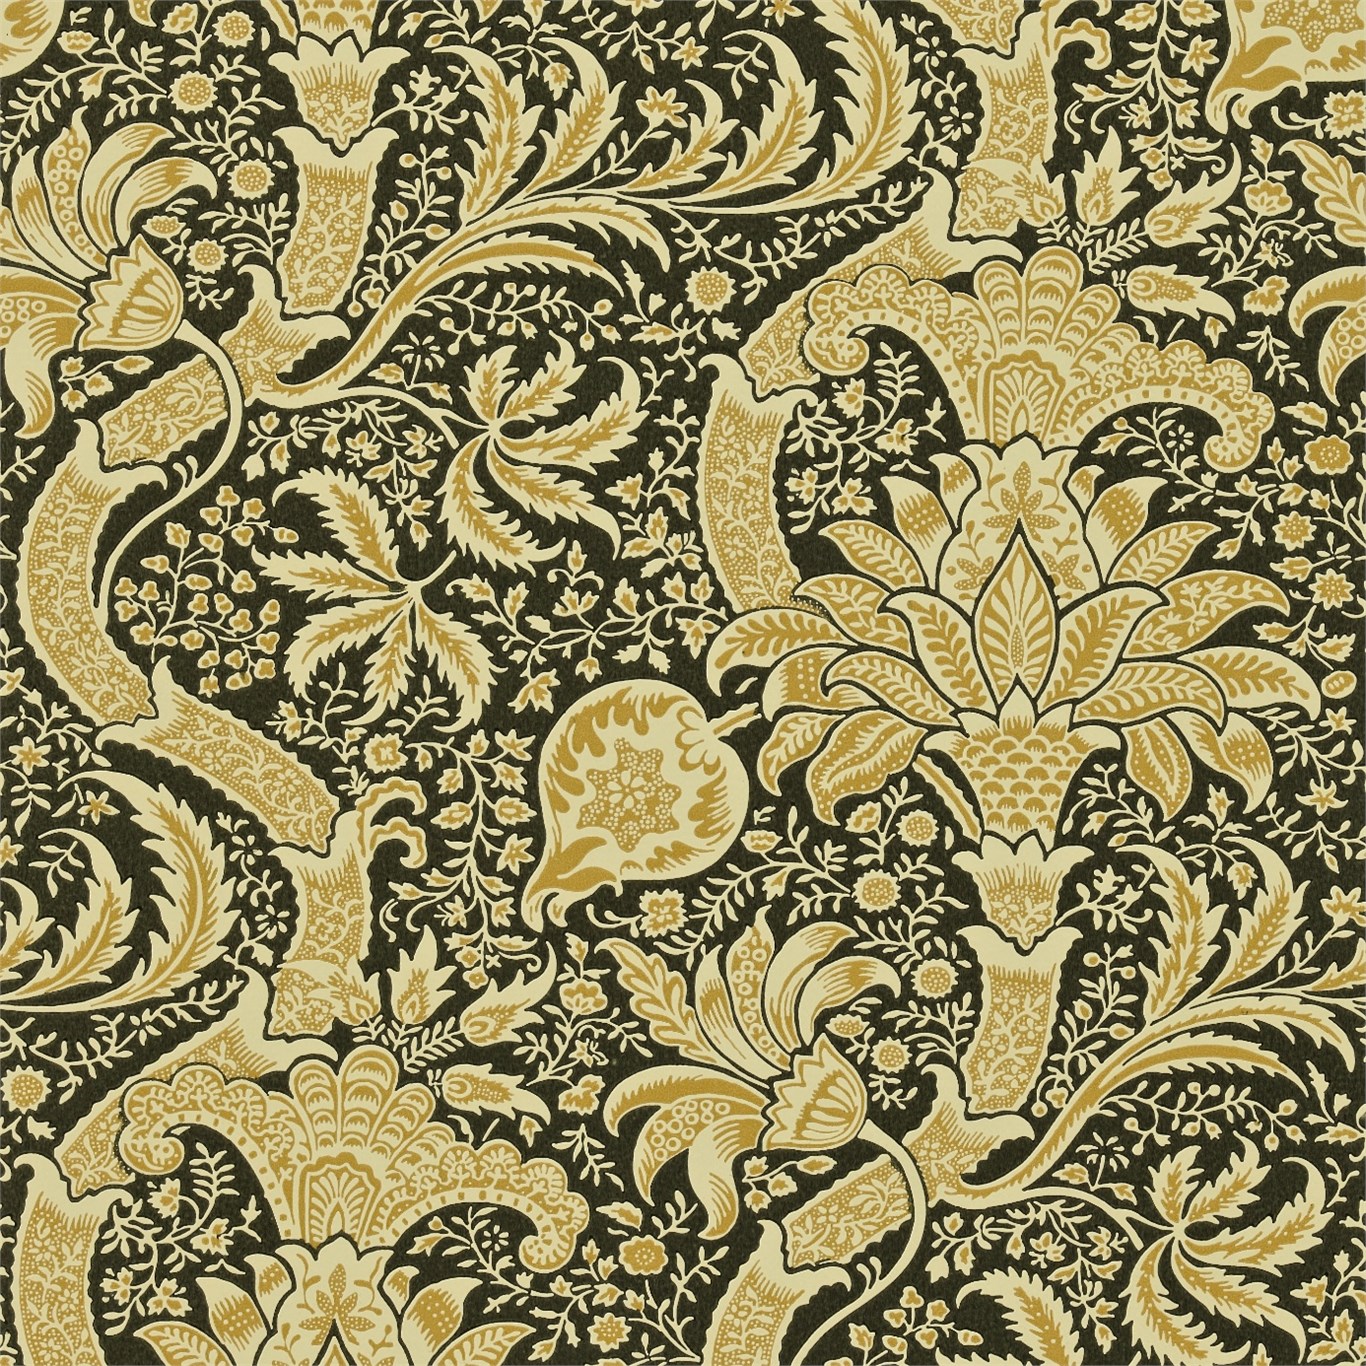 Original Morris Co Arts And Crafts Fabrics Wallpaper Designs